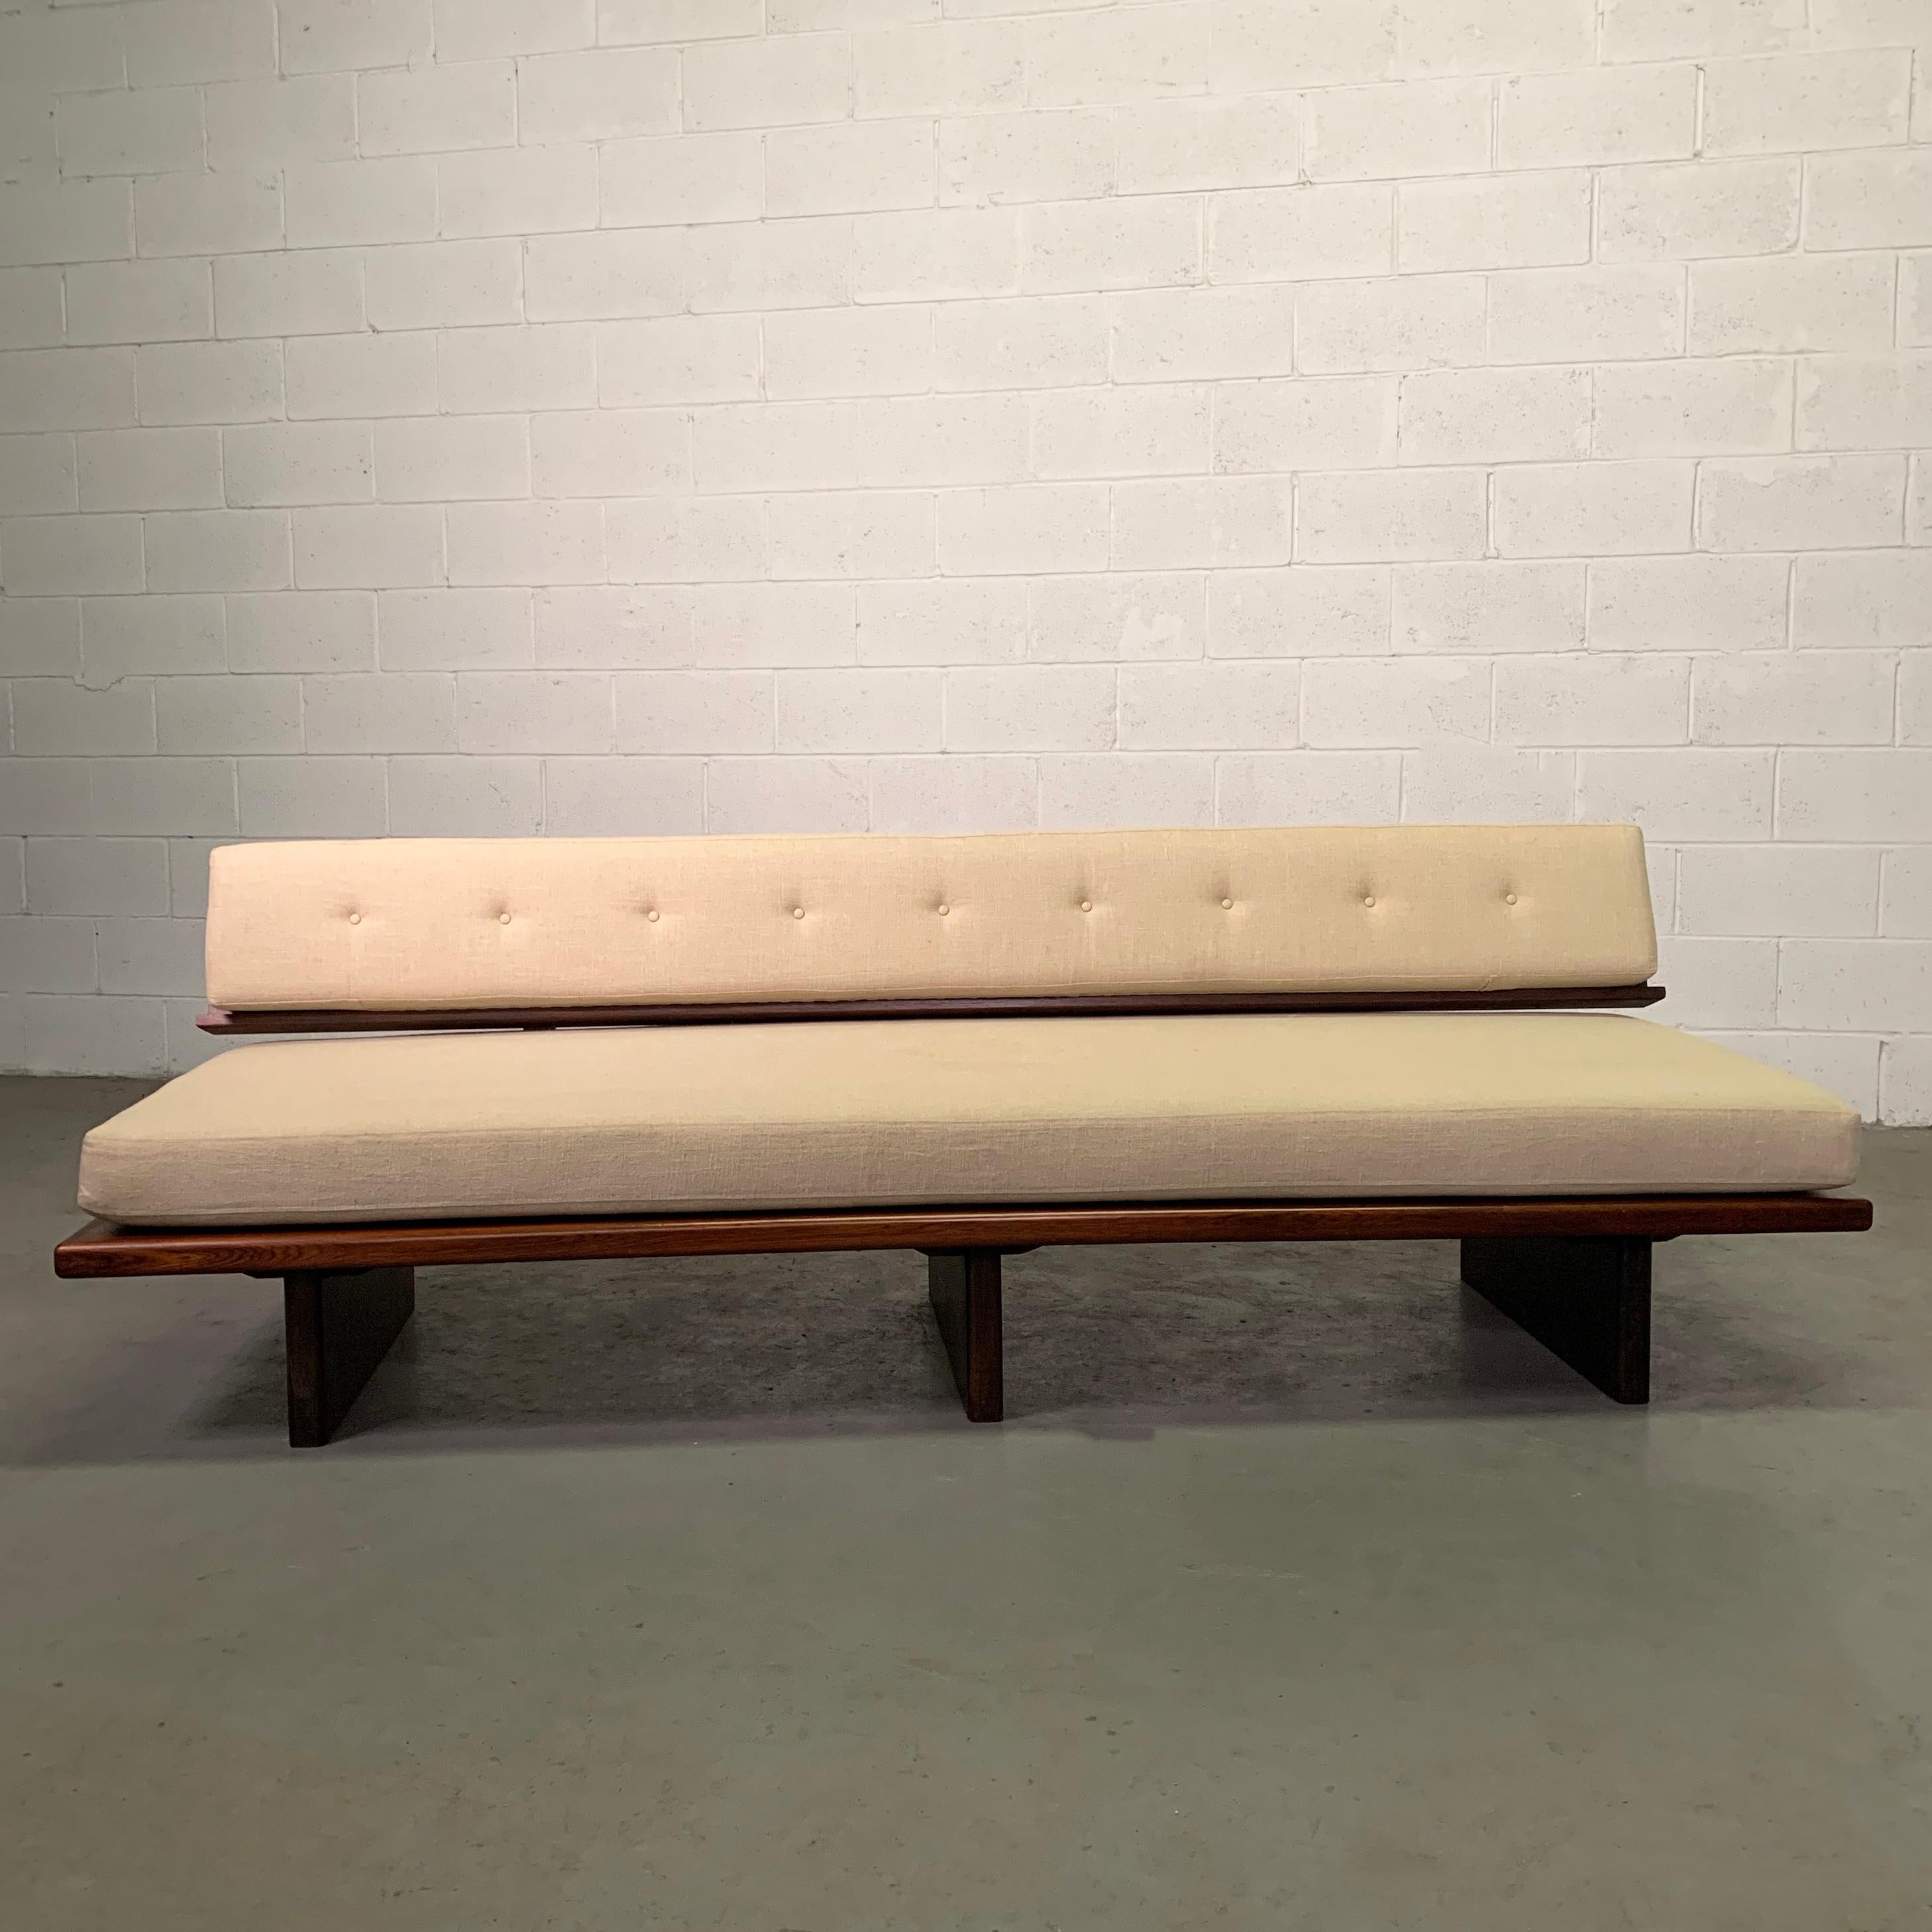 Mid-Century Modern:: brasilianische Sofa oder Daybed verfügt über eine Palisander Plattform Basis mit einem schwebenden Rücken durch Stahlklammern verbunden ist neu gepolstert in Haferflocken beige Leinen. Dieses Sofa ist aus allen Blickwinkeln